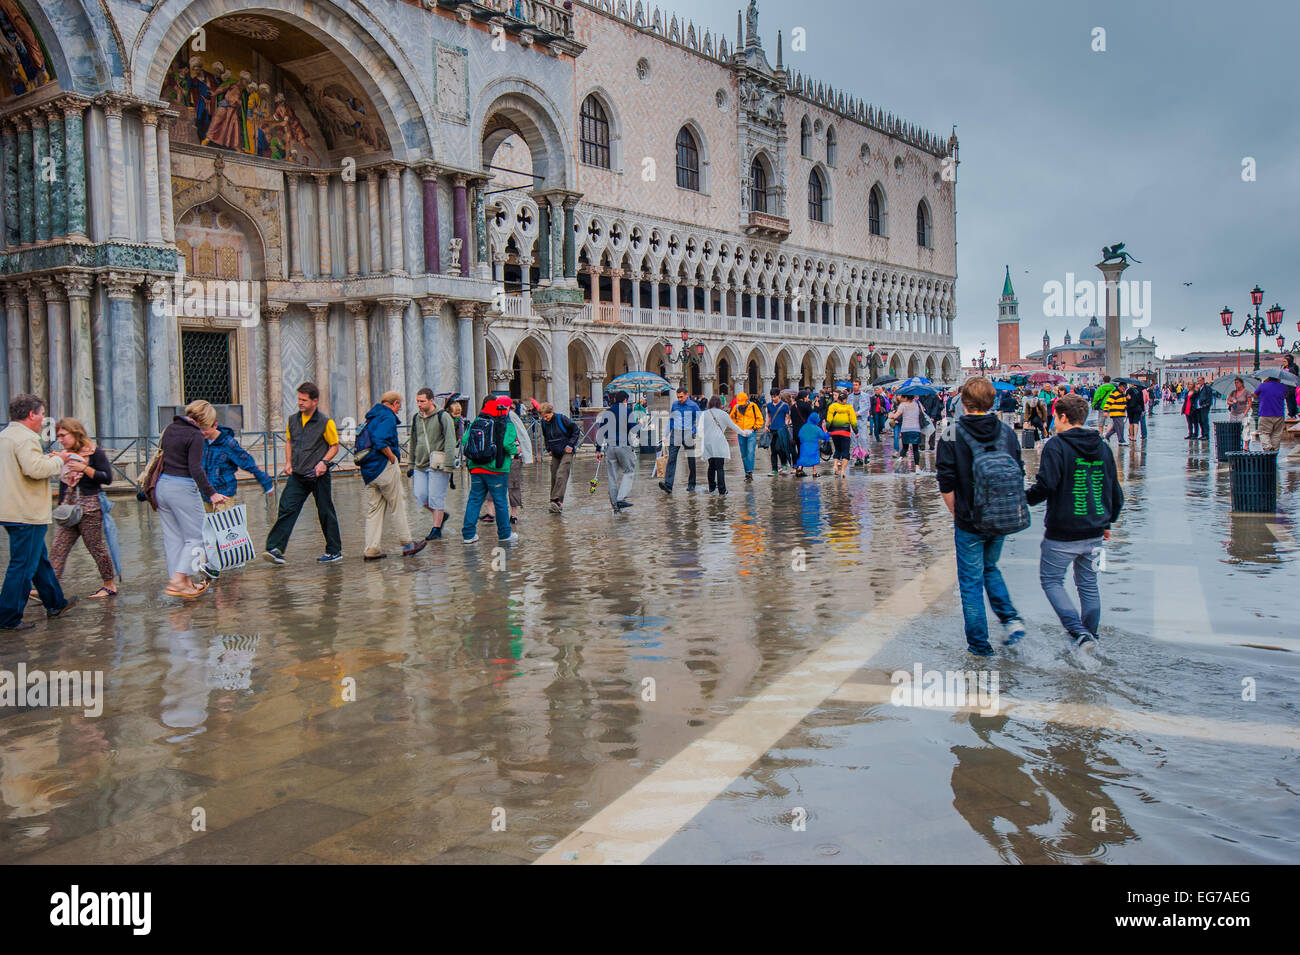 Venezia, Italia - Giugno, 07: alluvione a Venezia, l'acqua alta in Piazza San Marco in giugno, 07, 2011 a Venezia, Italia Foto Stock